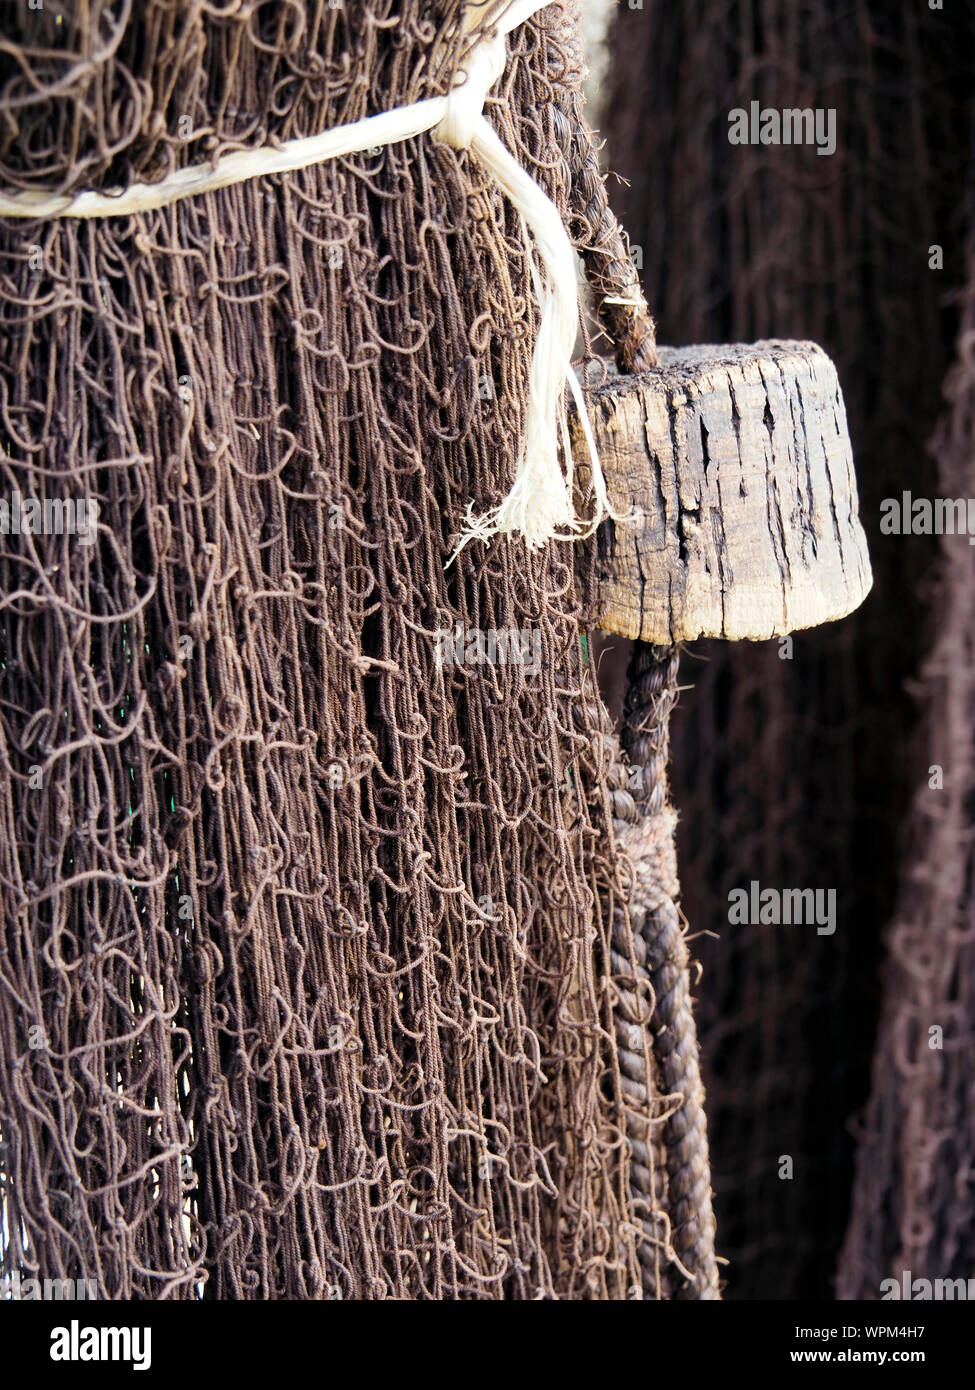 AN old drift net with cork floats hangs over the mizzen sail boom